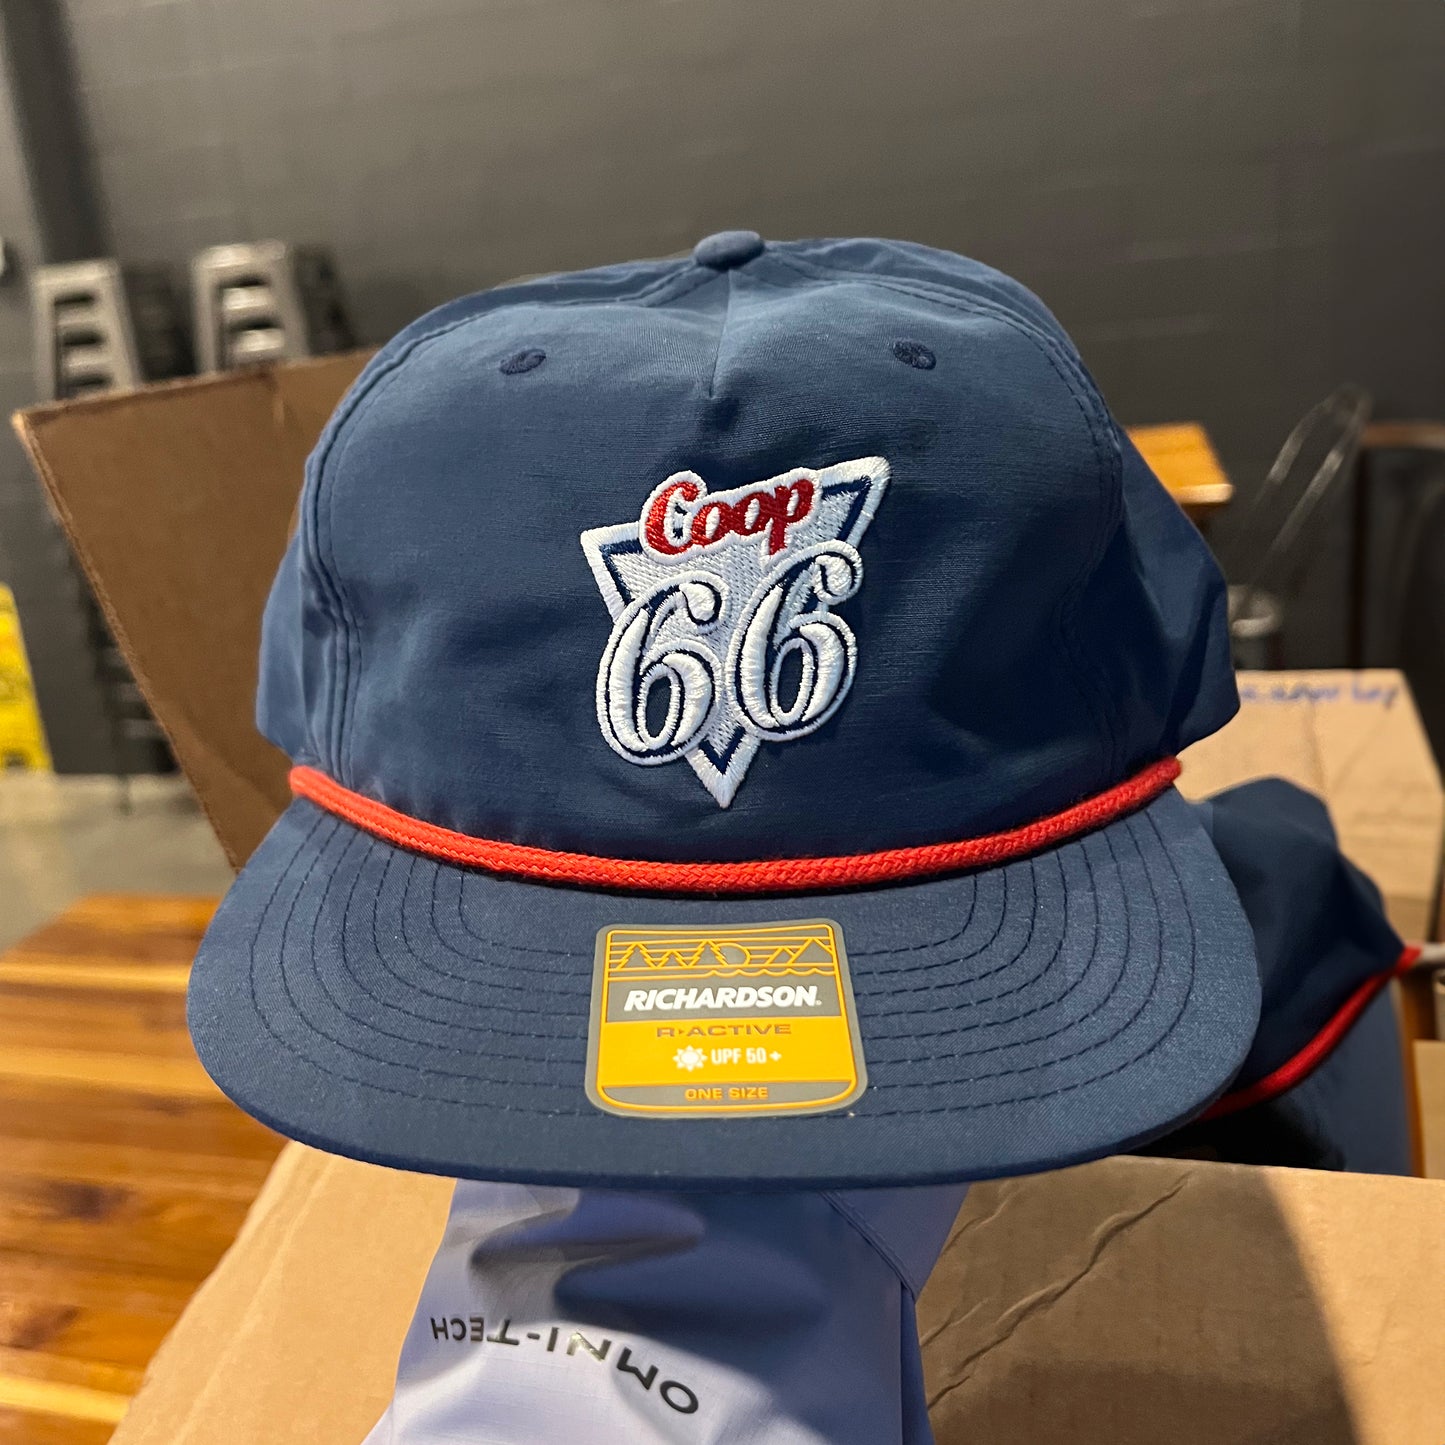 COOP 66 Rope Hat